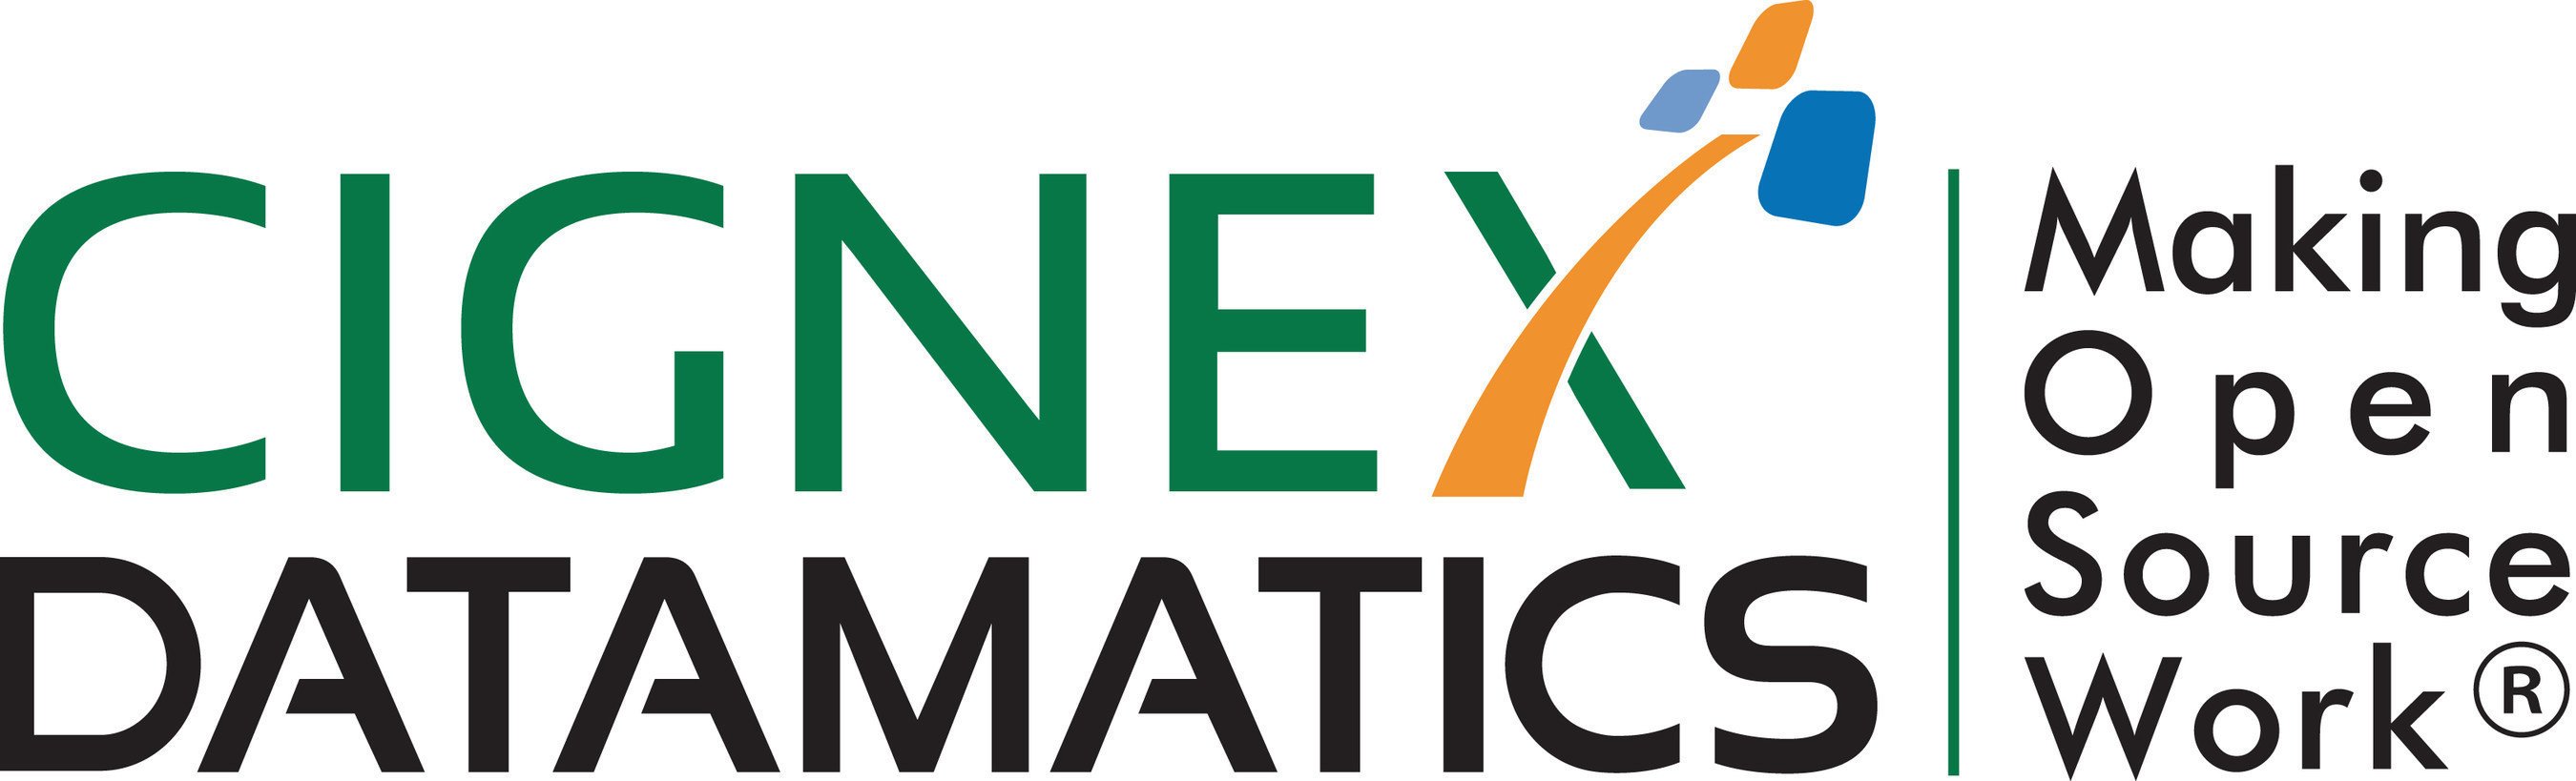 CIGNEX logo (PRNewsFoto/CIGNEX Datamatics) (PRNewsFoto/CIGNEX Datamatics)